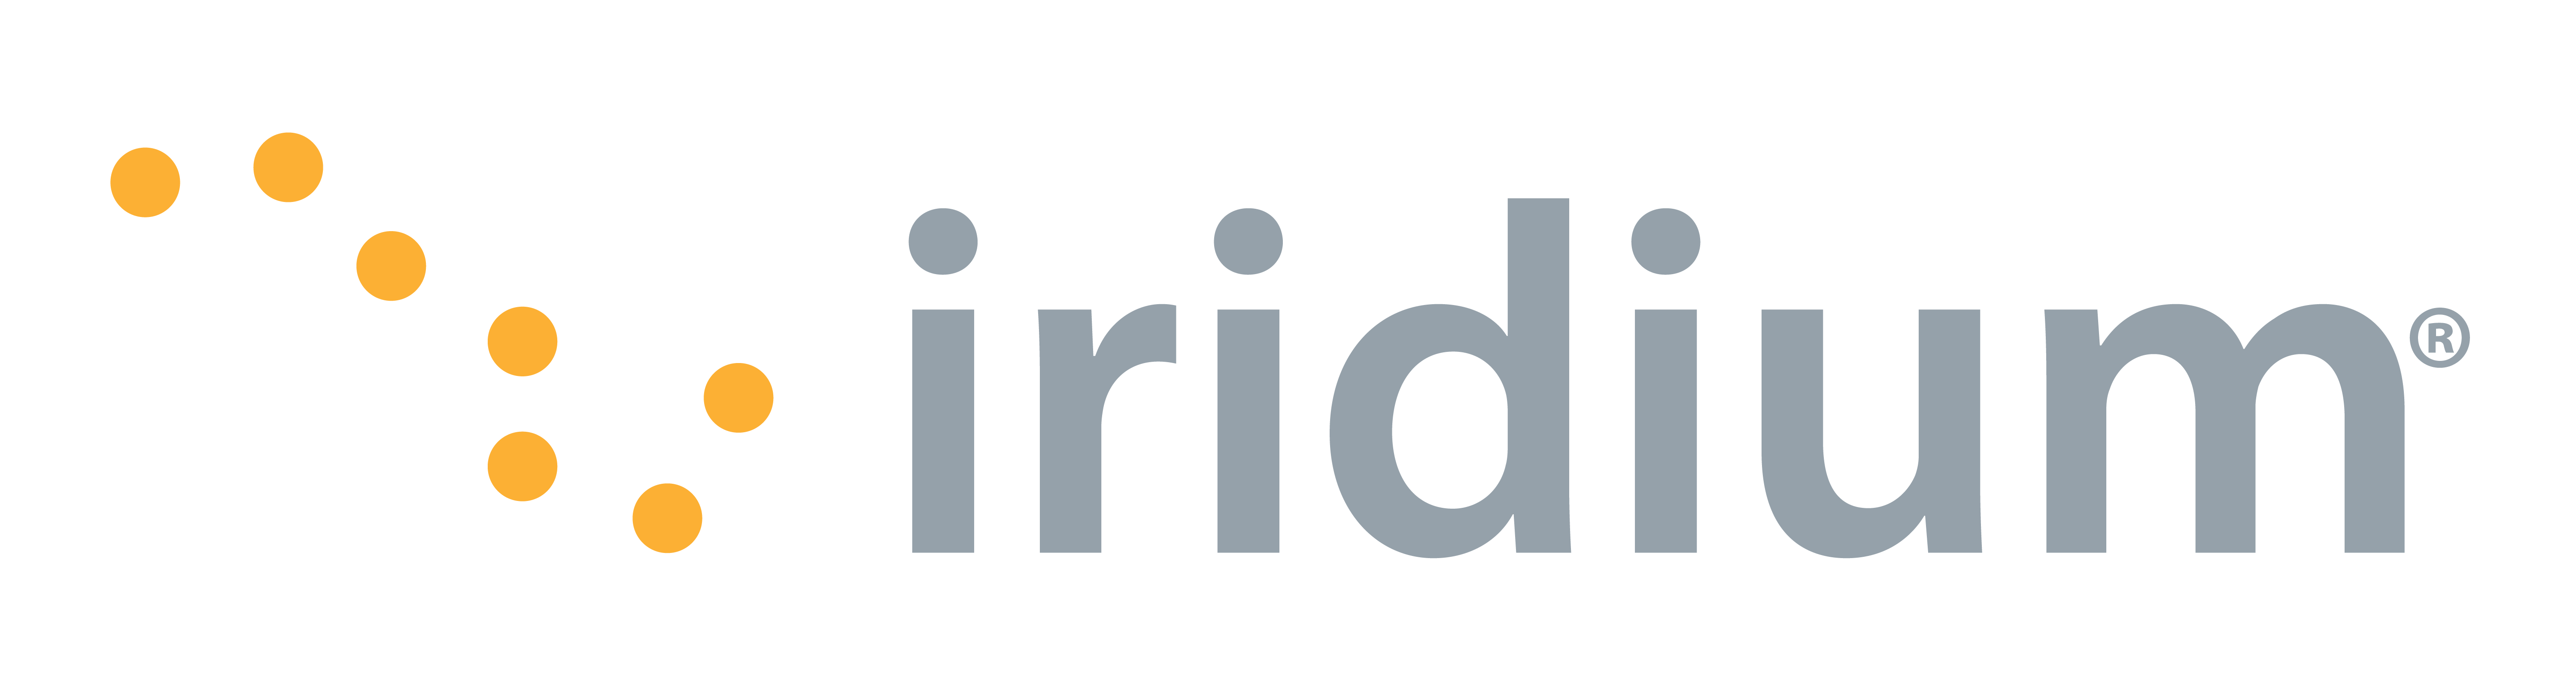 Iridium Logo - Iridium Re-Epoch will change time on handheld satellite phones ...